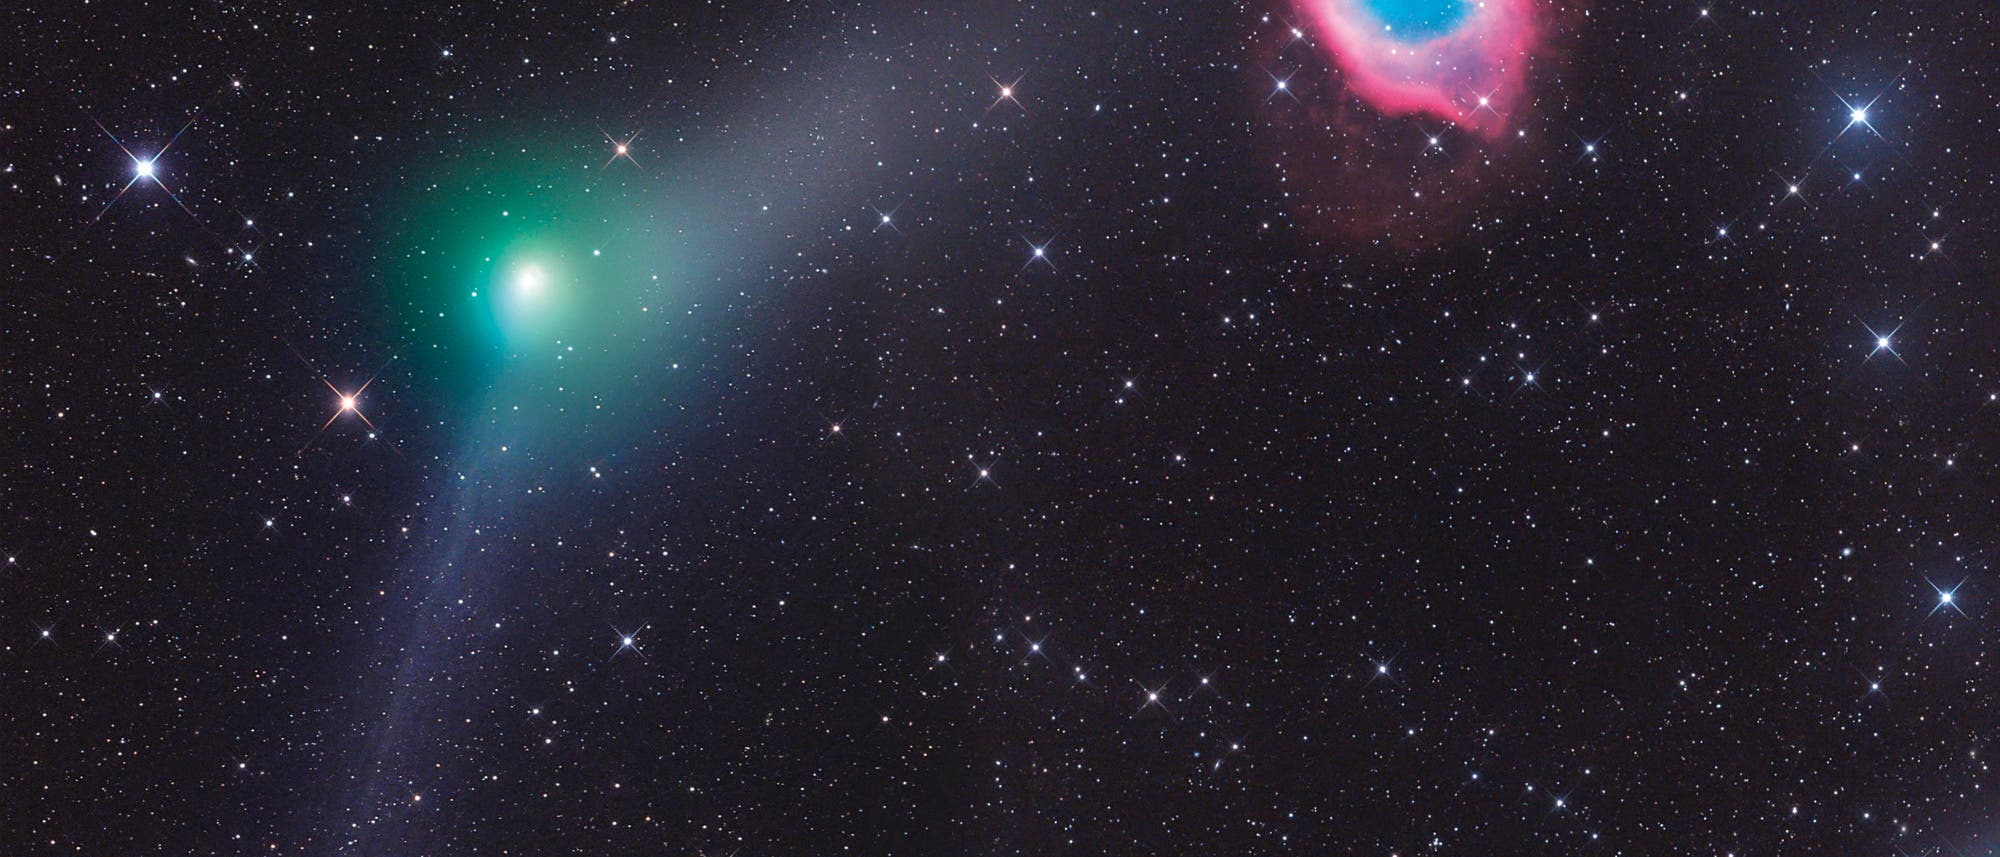 Der Komet C/2013 X1 (PANSTARRS) begeg­nete am 5. Juni 2016 dem farbenprächtigen Helix­nebel NGC 7293. Das von Gerald  Rhemann in Namibia aufgenommene Bild zeigt sowohl den Gas- als auch den Staubschweif des Kometen. Zum Einsatz kamen ein 12-Zoll-Teleskop von ASA ( f/3,6) und eine CCD-Kamera FLI ML 16200. 